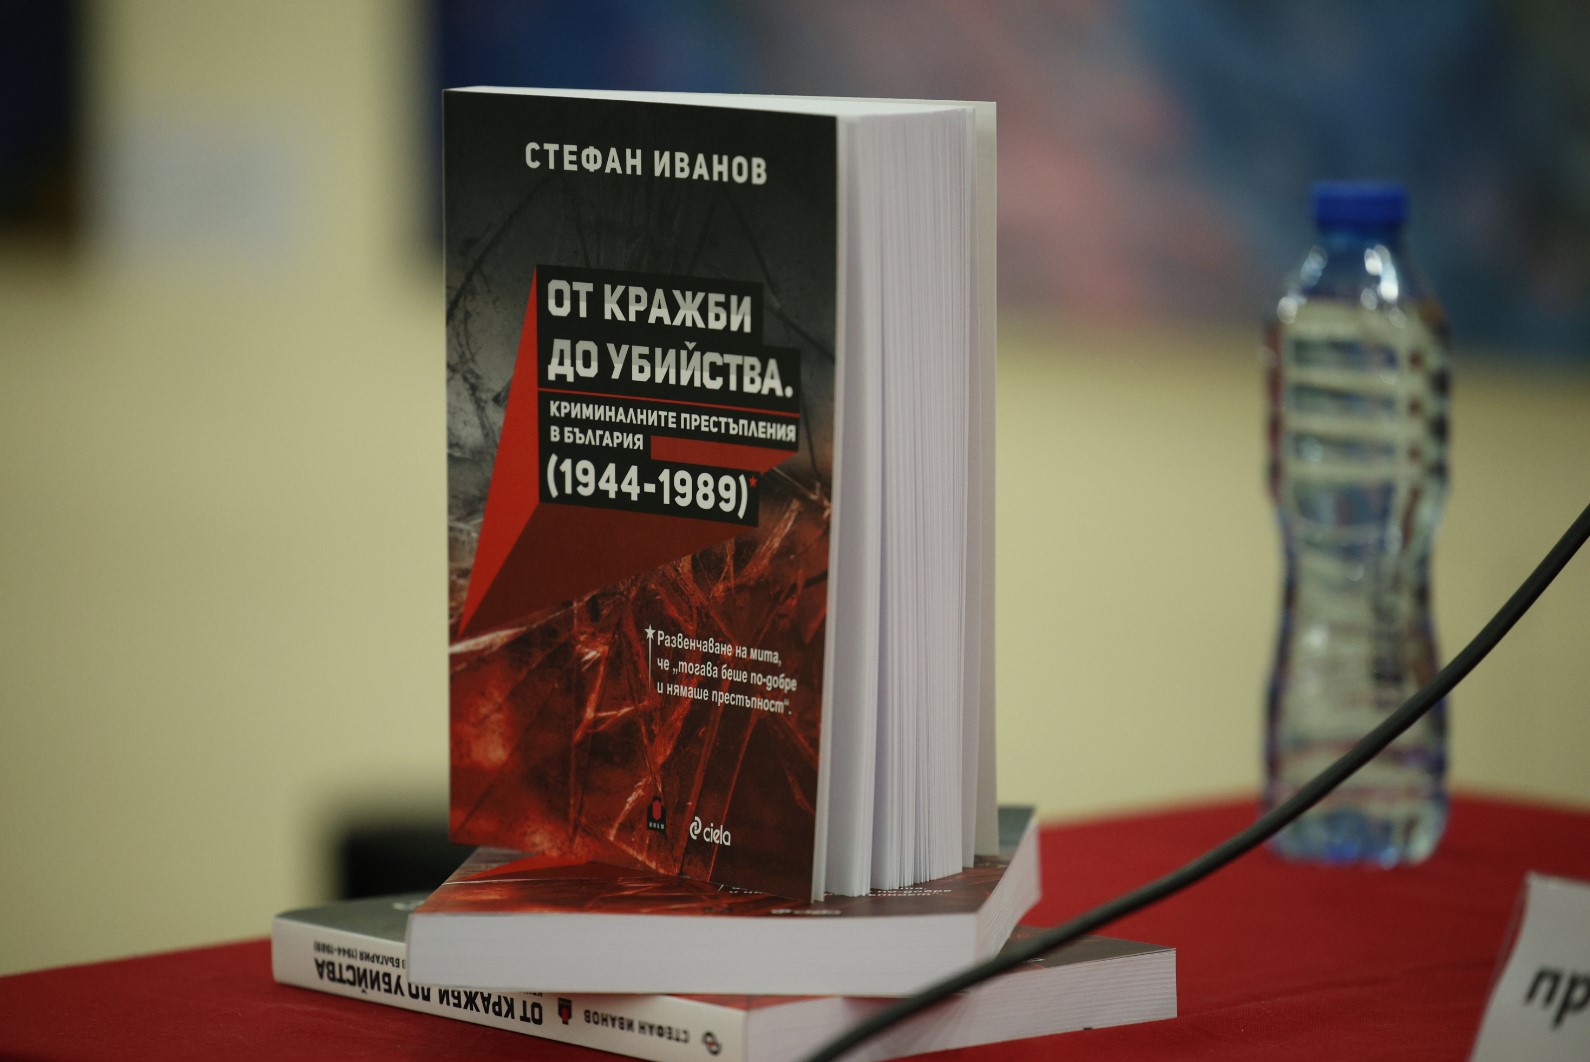 Историкът д-р Стефан Иванов разказва за криминалните престъпления в страната в периода от 1944 до 1989 г.